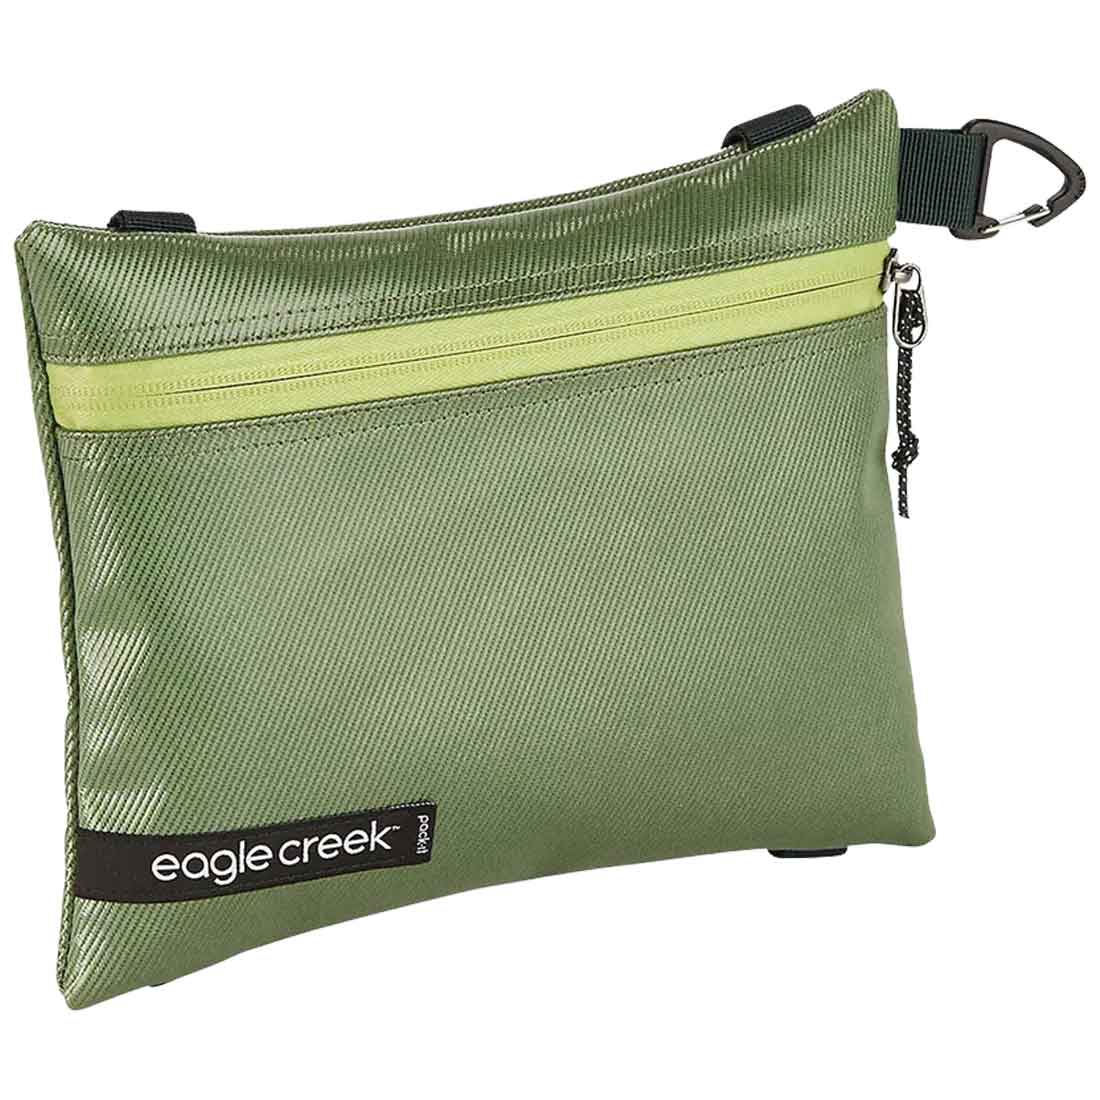 Eagle Creek Pack-It Gear Pouch S